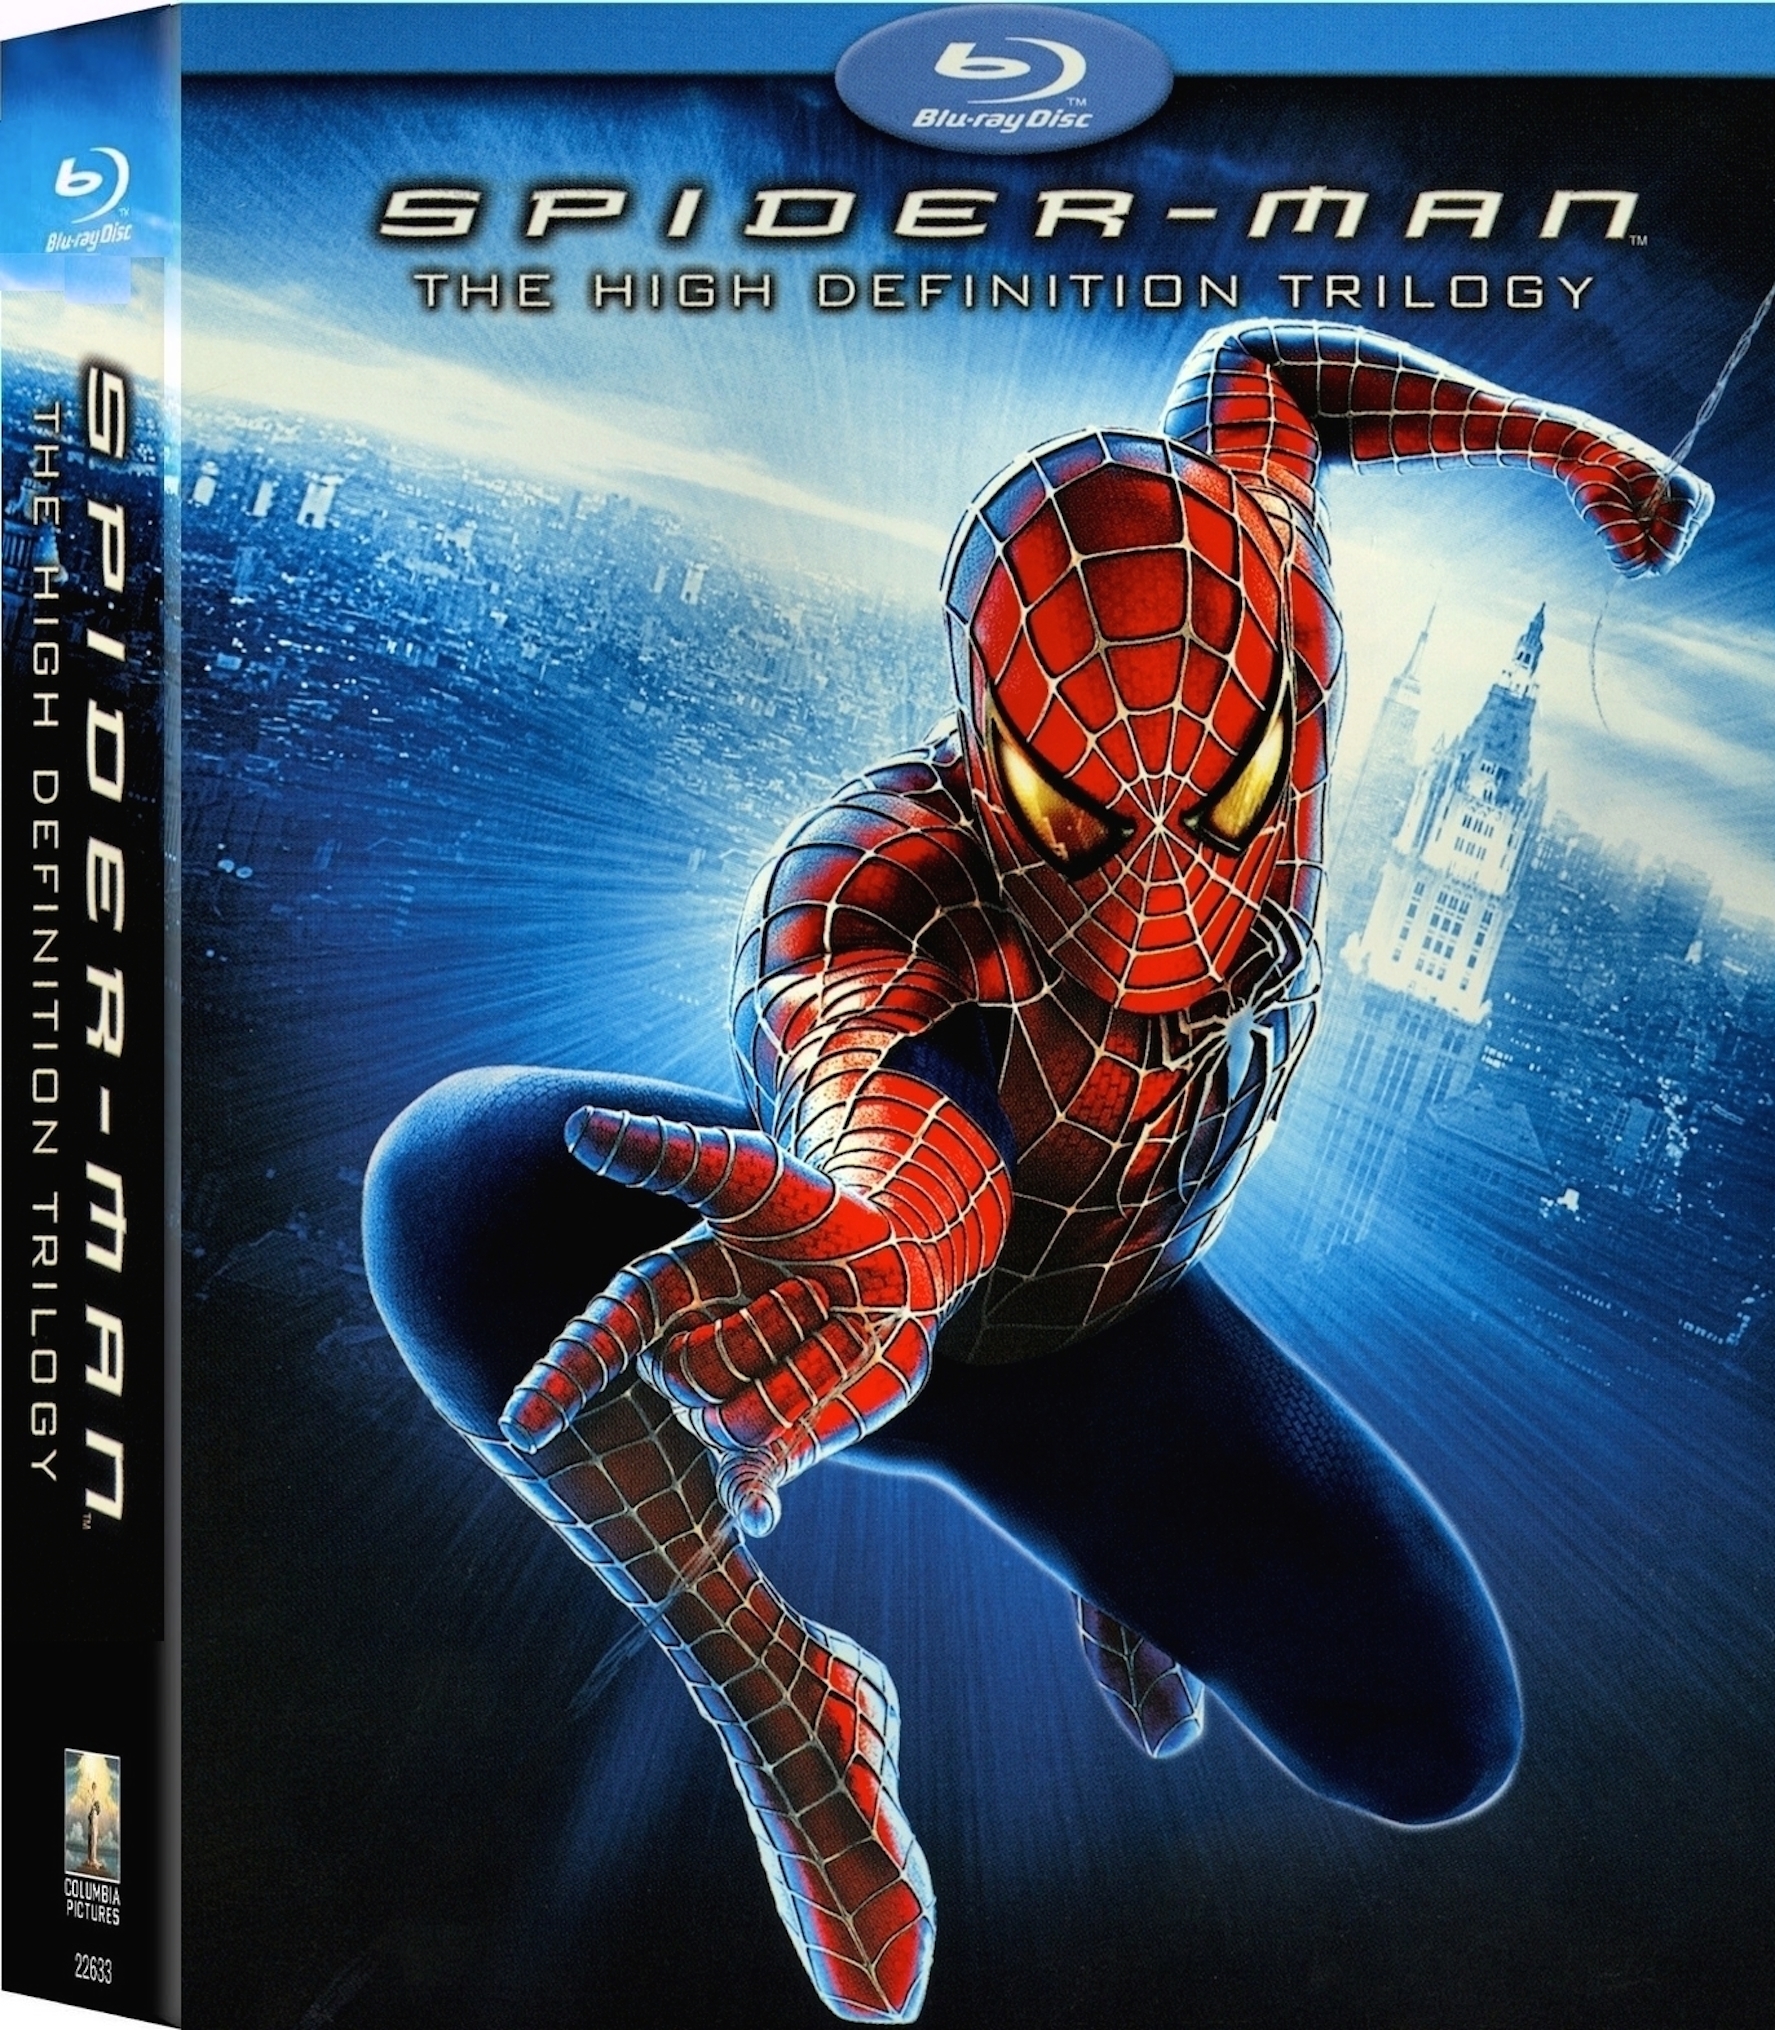 |倒序浏览 |阅读模式 [蜘蛛侠1].Spider-Man.2002.EUR.UHD.BluRay.2160p.HEVC.TrueHD.7.1-NIMA4K   55.86G-3.jpg